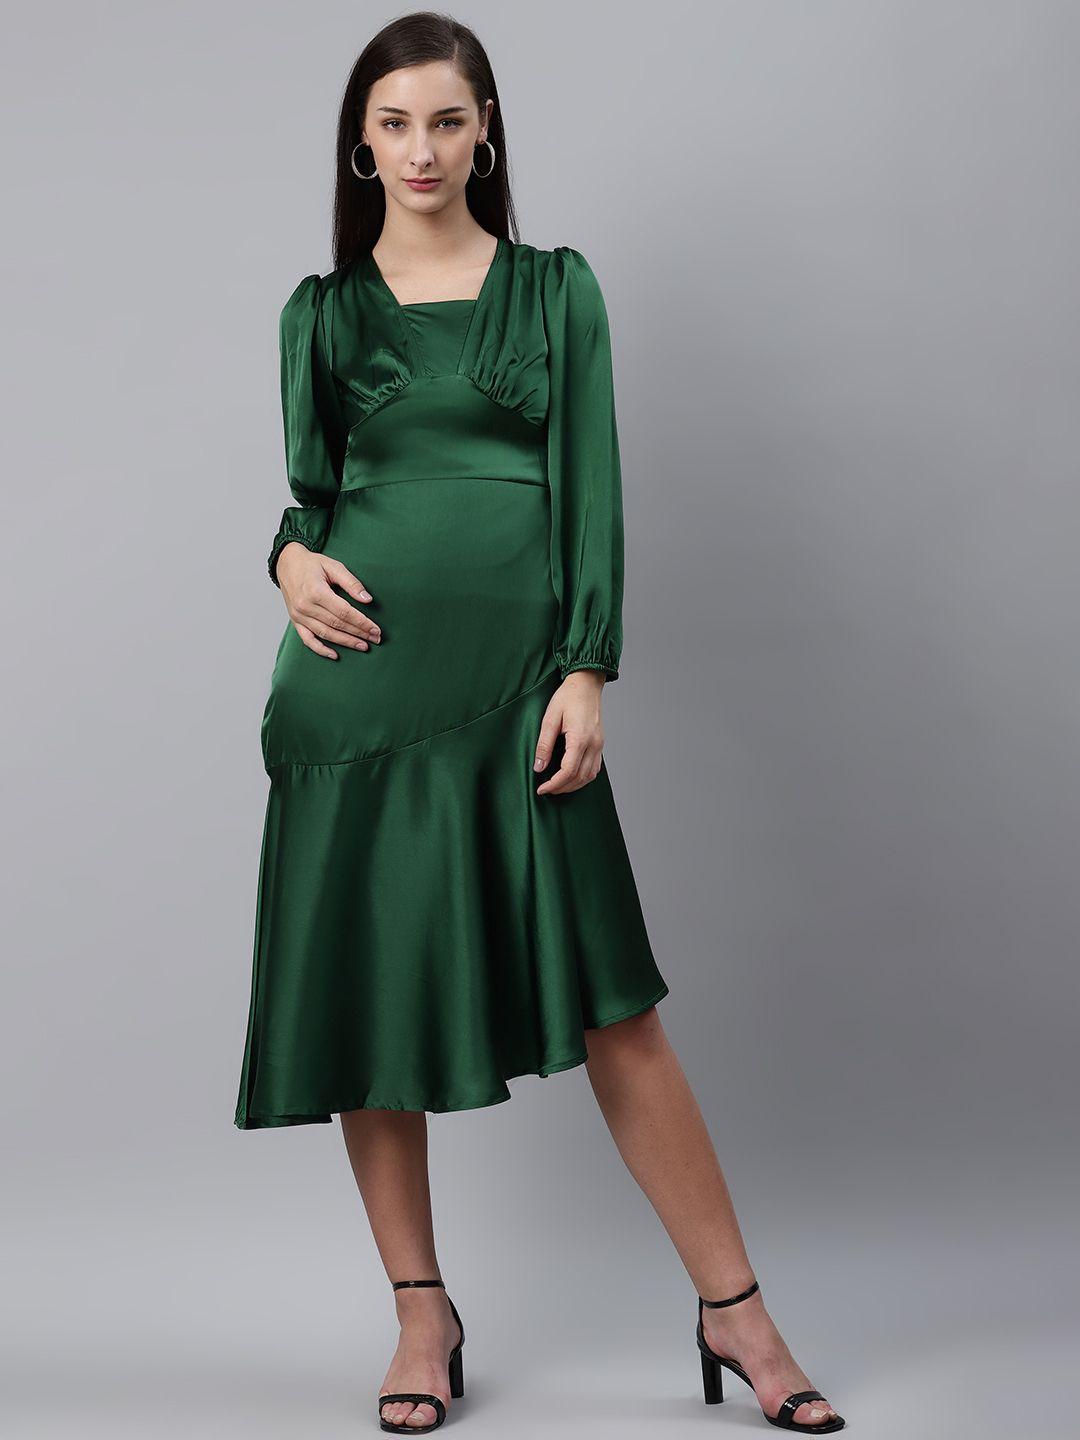 pluss green pleated solid midi a-line dress